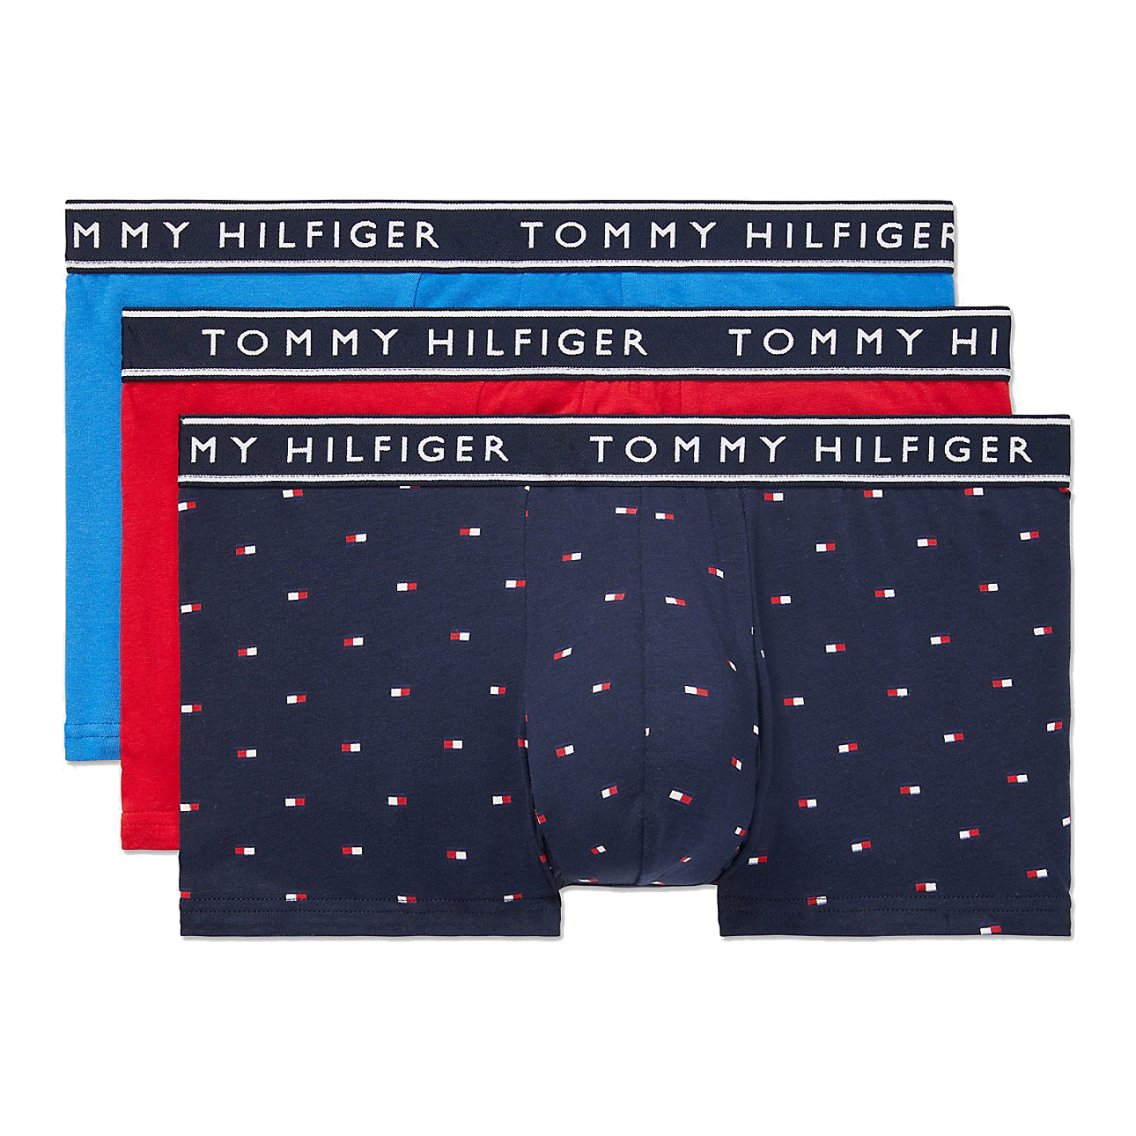 TOMMY HILFIGER(トミーヒルフィガー)[09T4225-413]:ボクサーパンツ,男性下着,インナーの通販